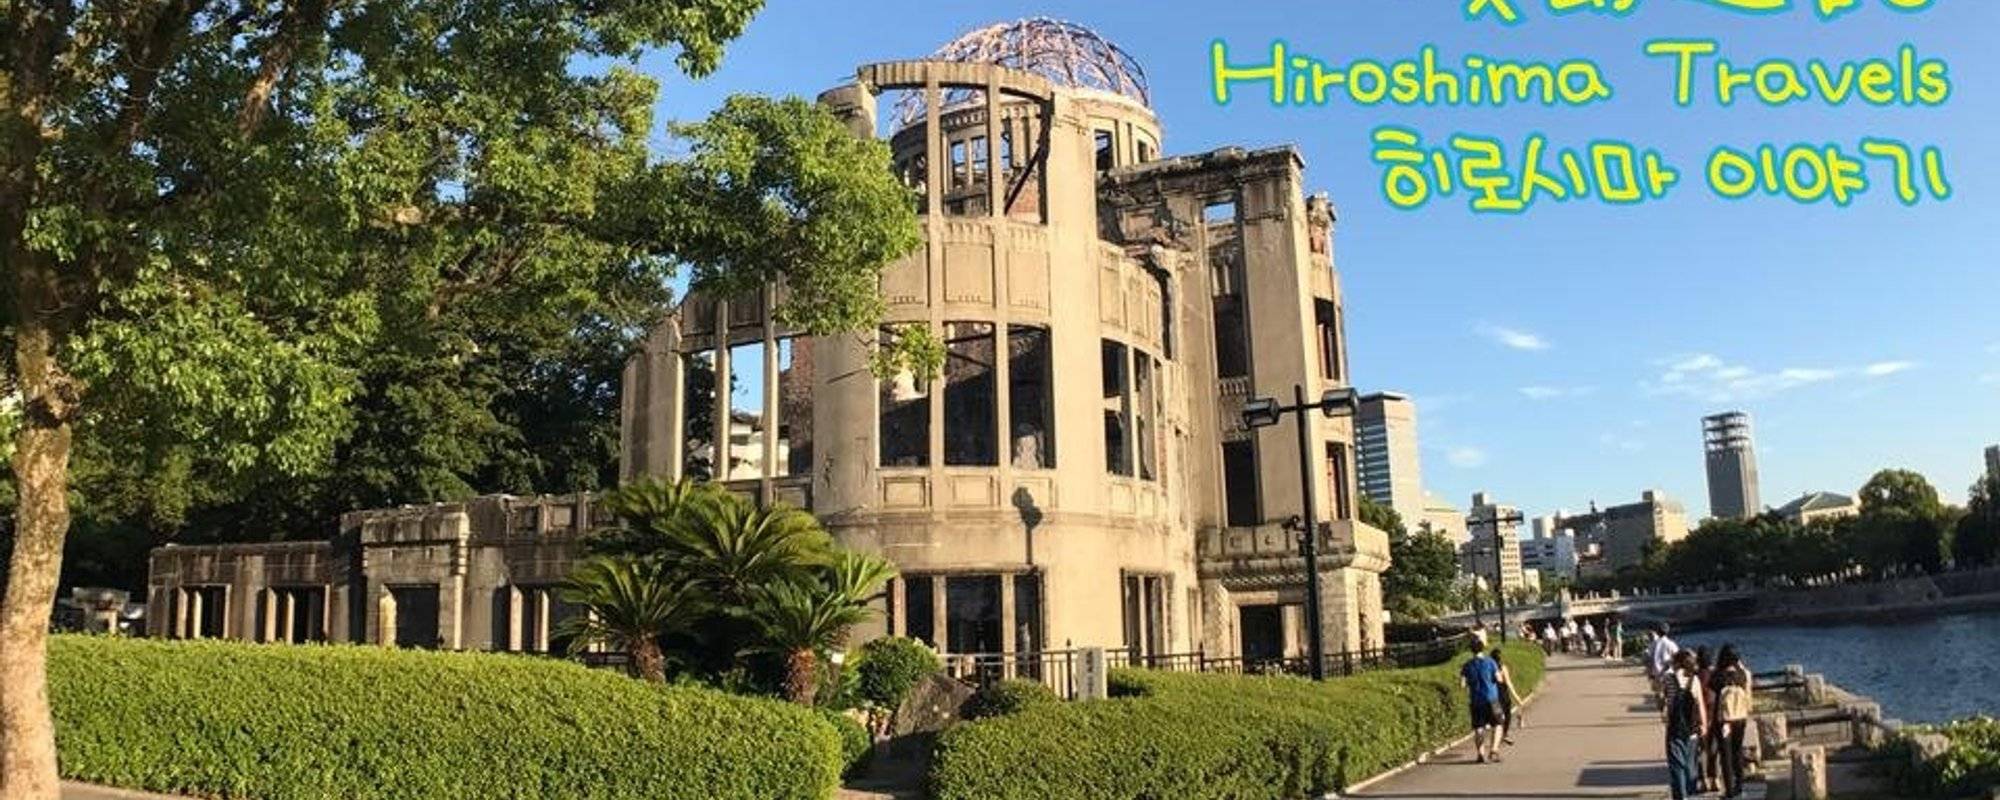 廣島遊記/Hiroshima Travels ulog#005